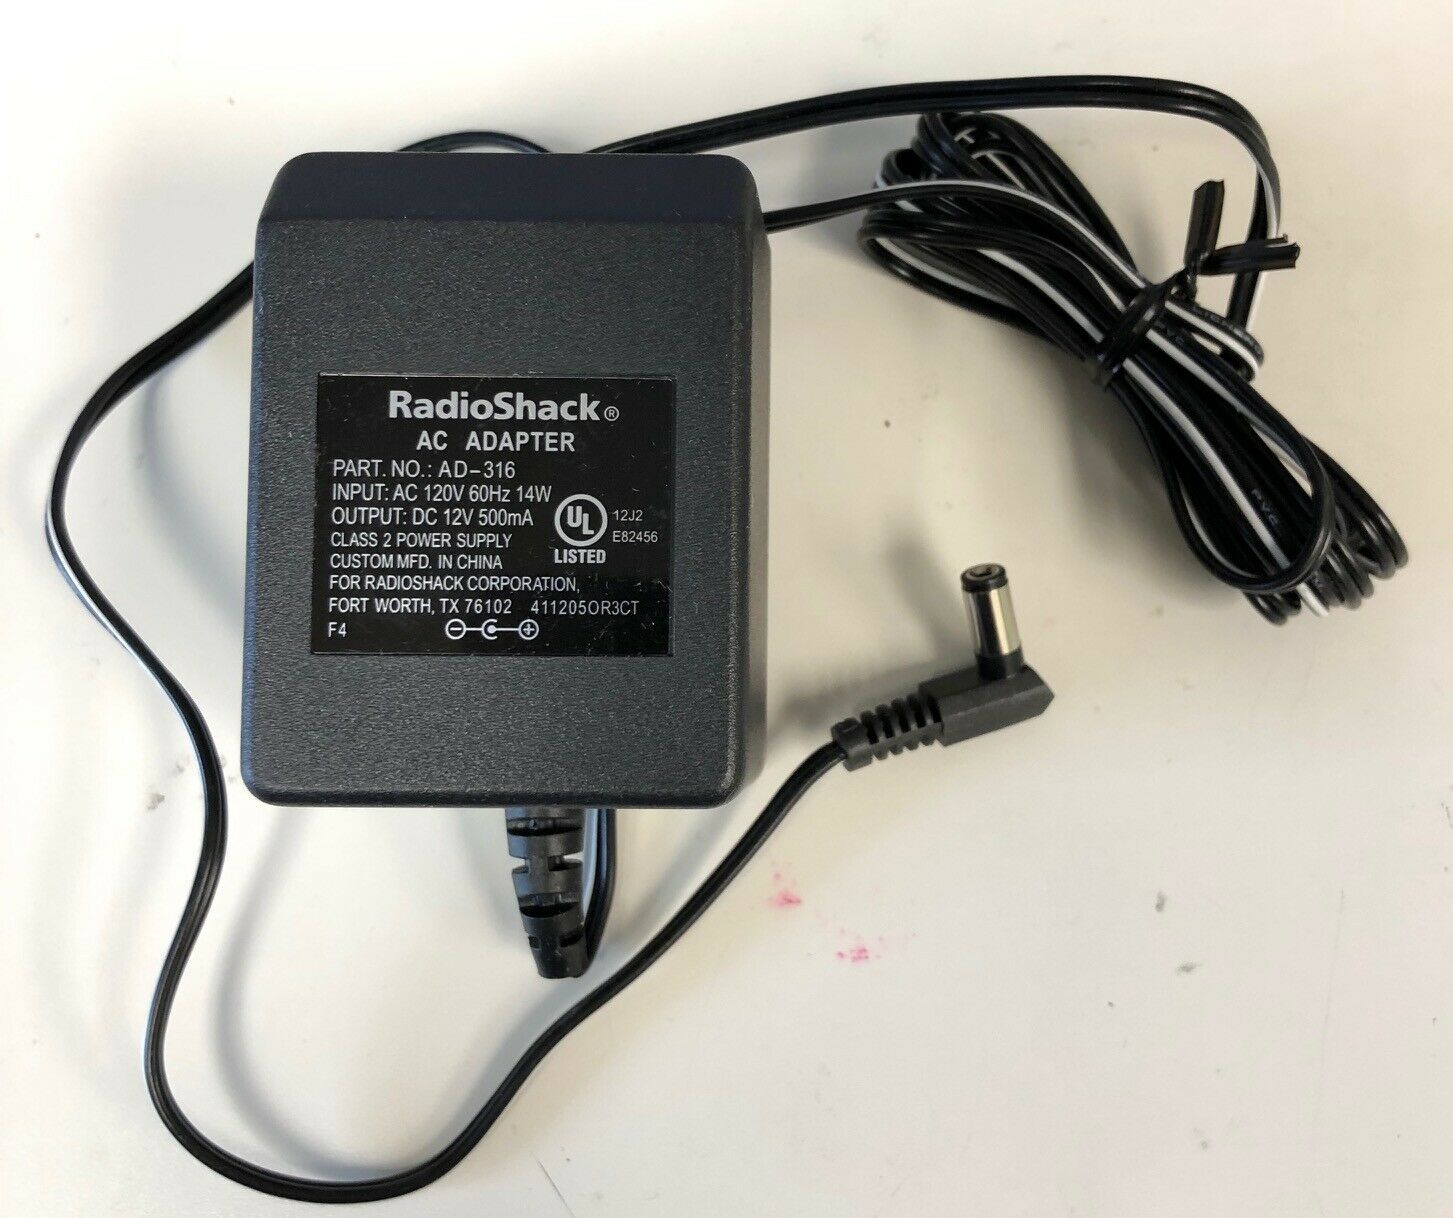 NEW RadioShack AC Adapter AD-316 12V 500mA Class 2 Power Supply